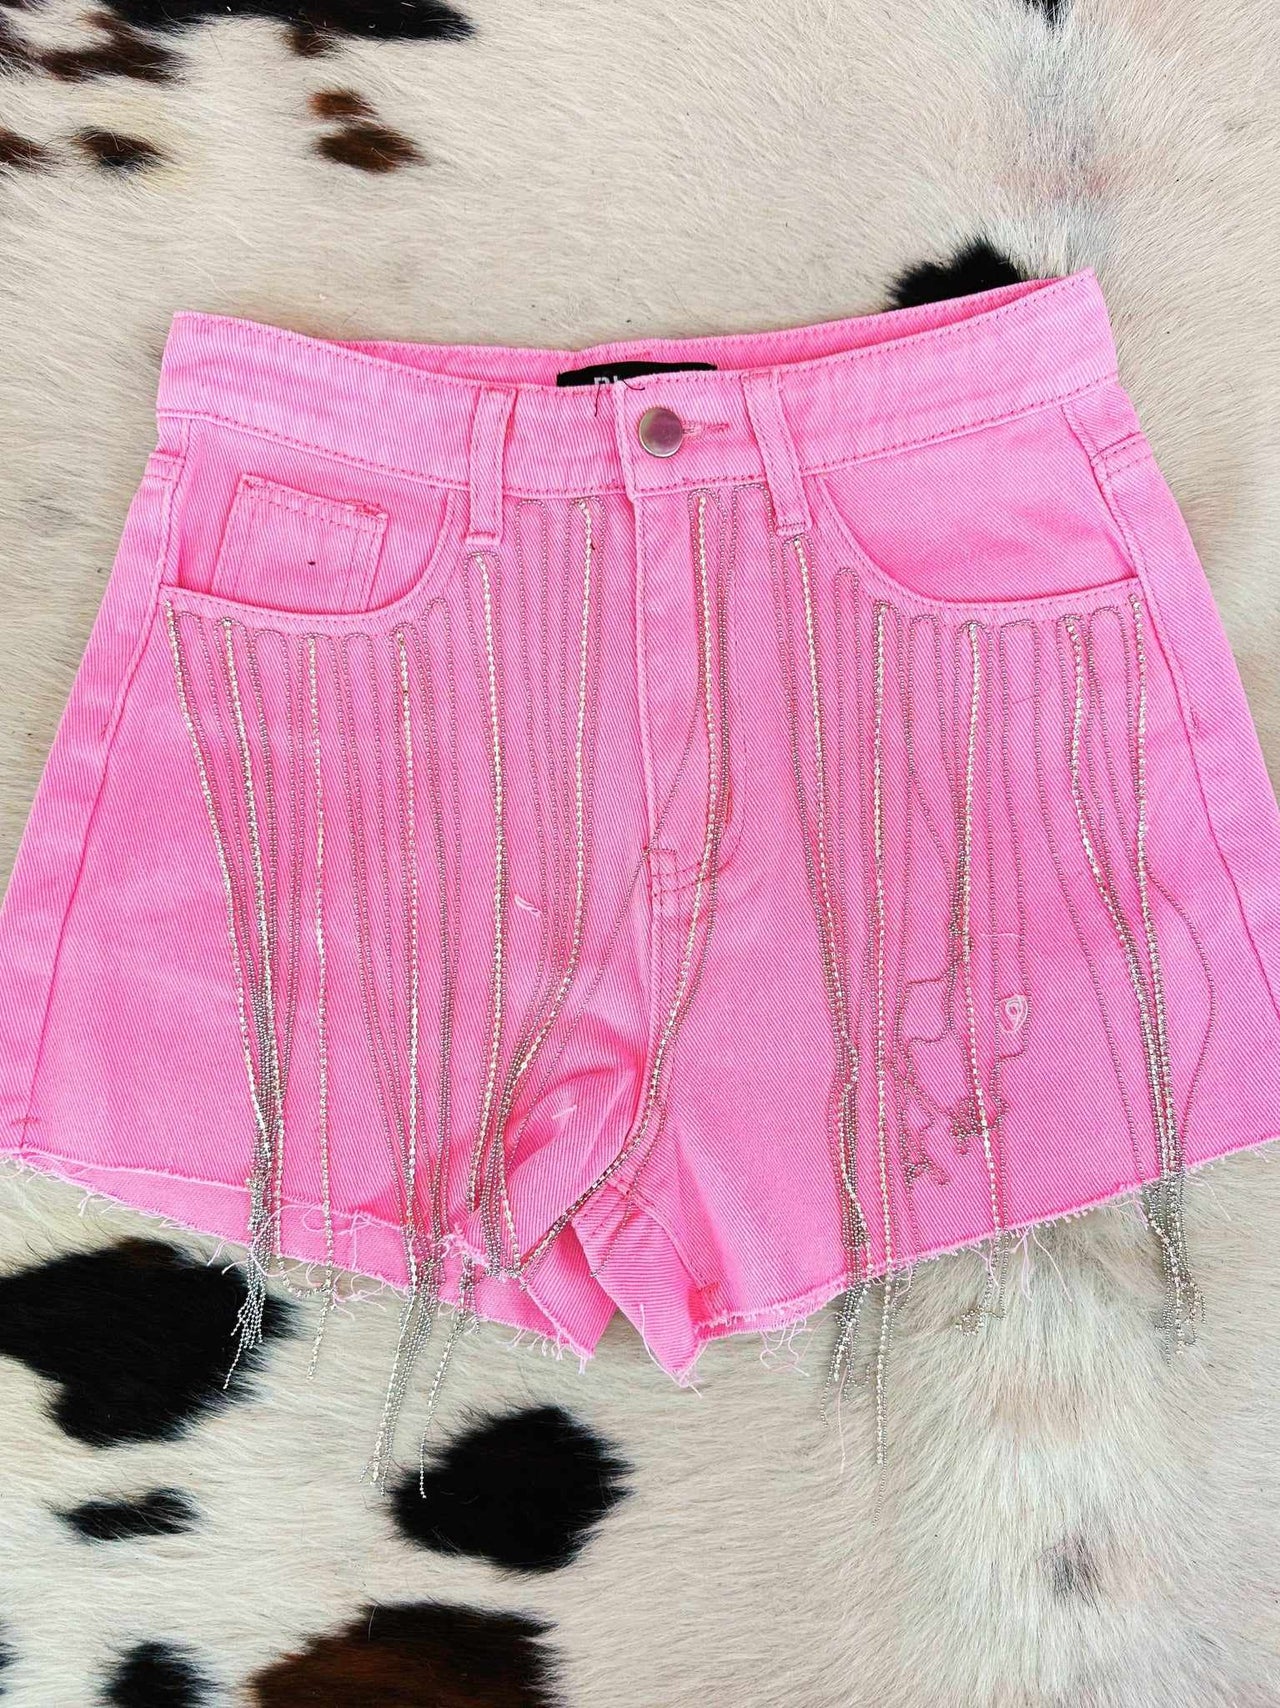 Pink denim shorts with rhinestone fringe